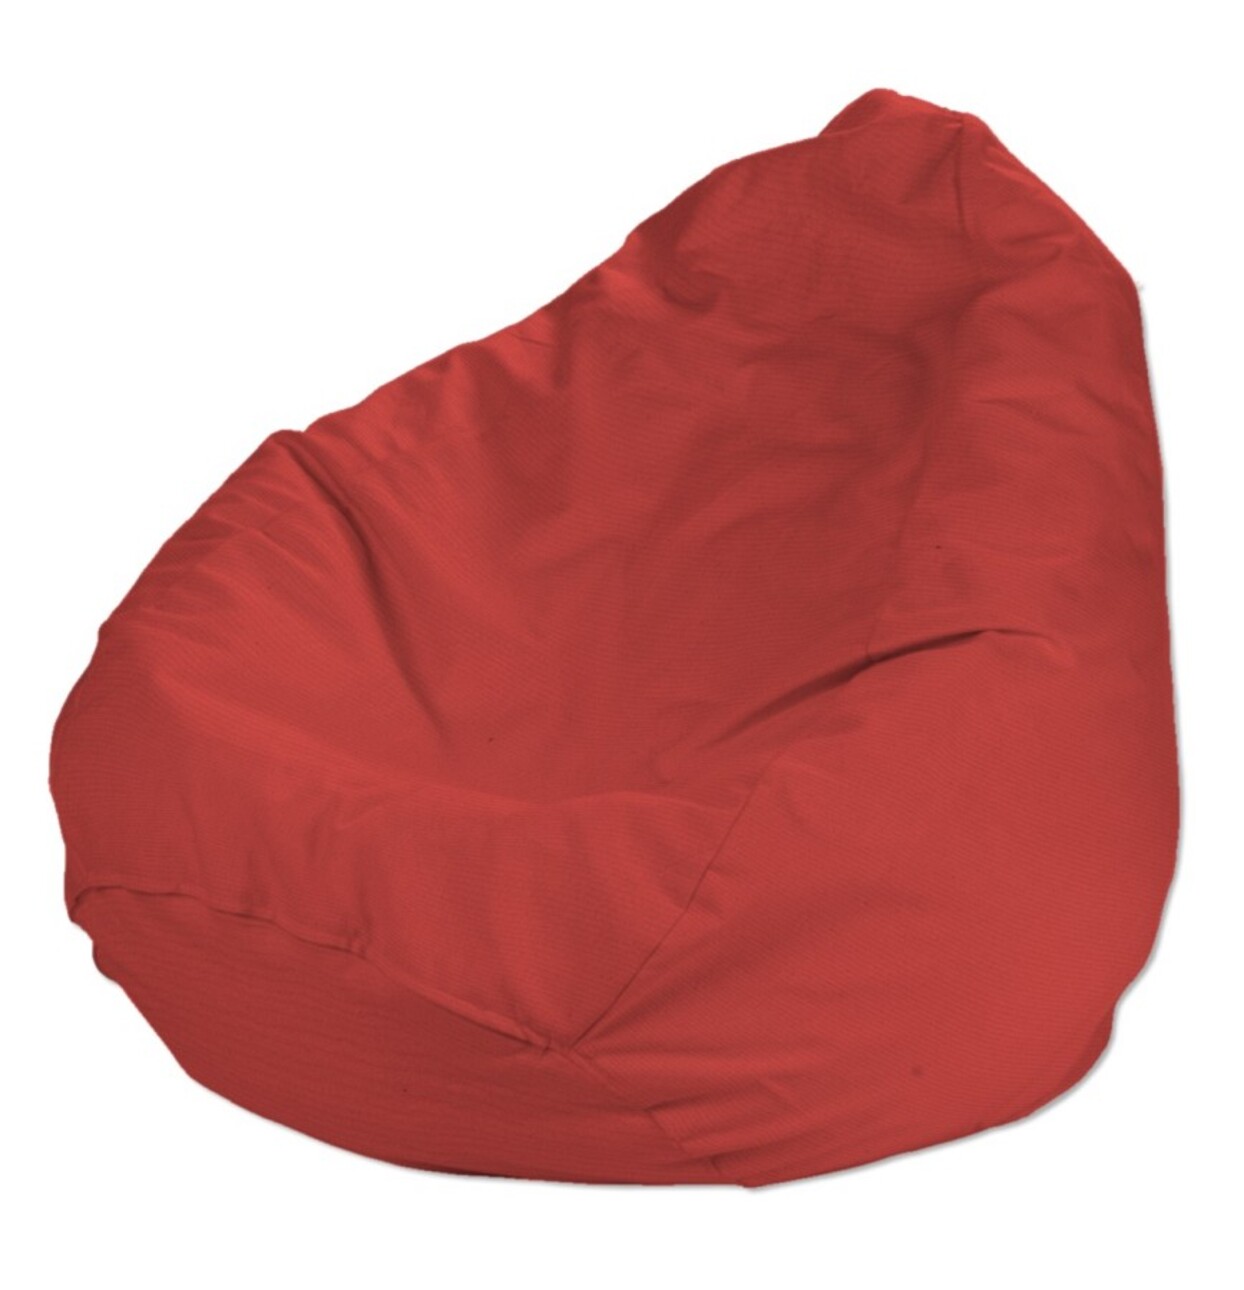 Bezug für Sitzsack, rot, Bezug für Sitzsack Ø80 x 115 cm, Loneta (133-43) günstig online kaufen